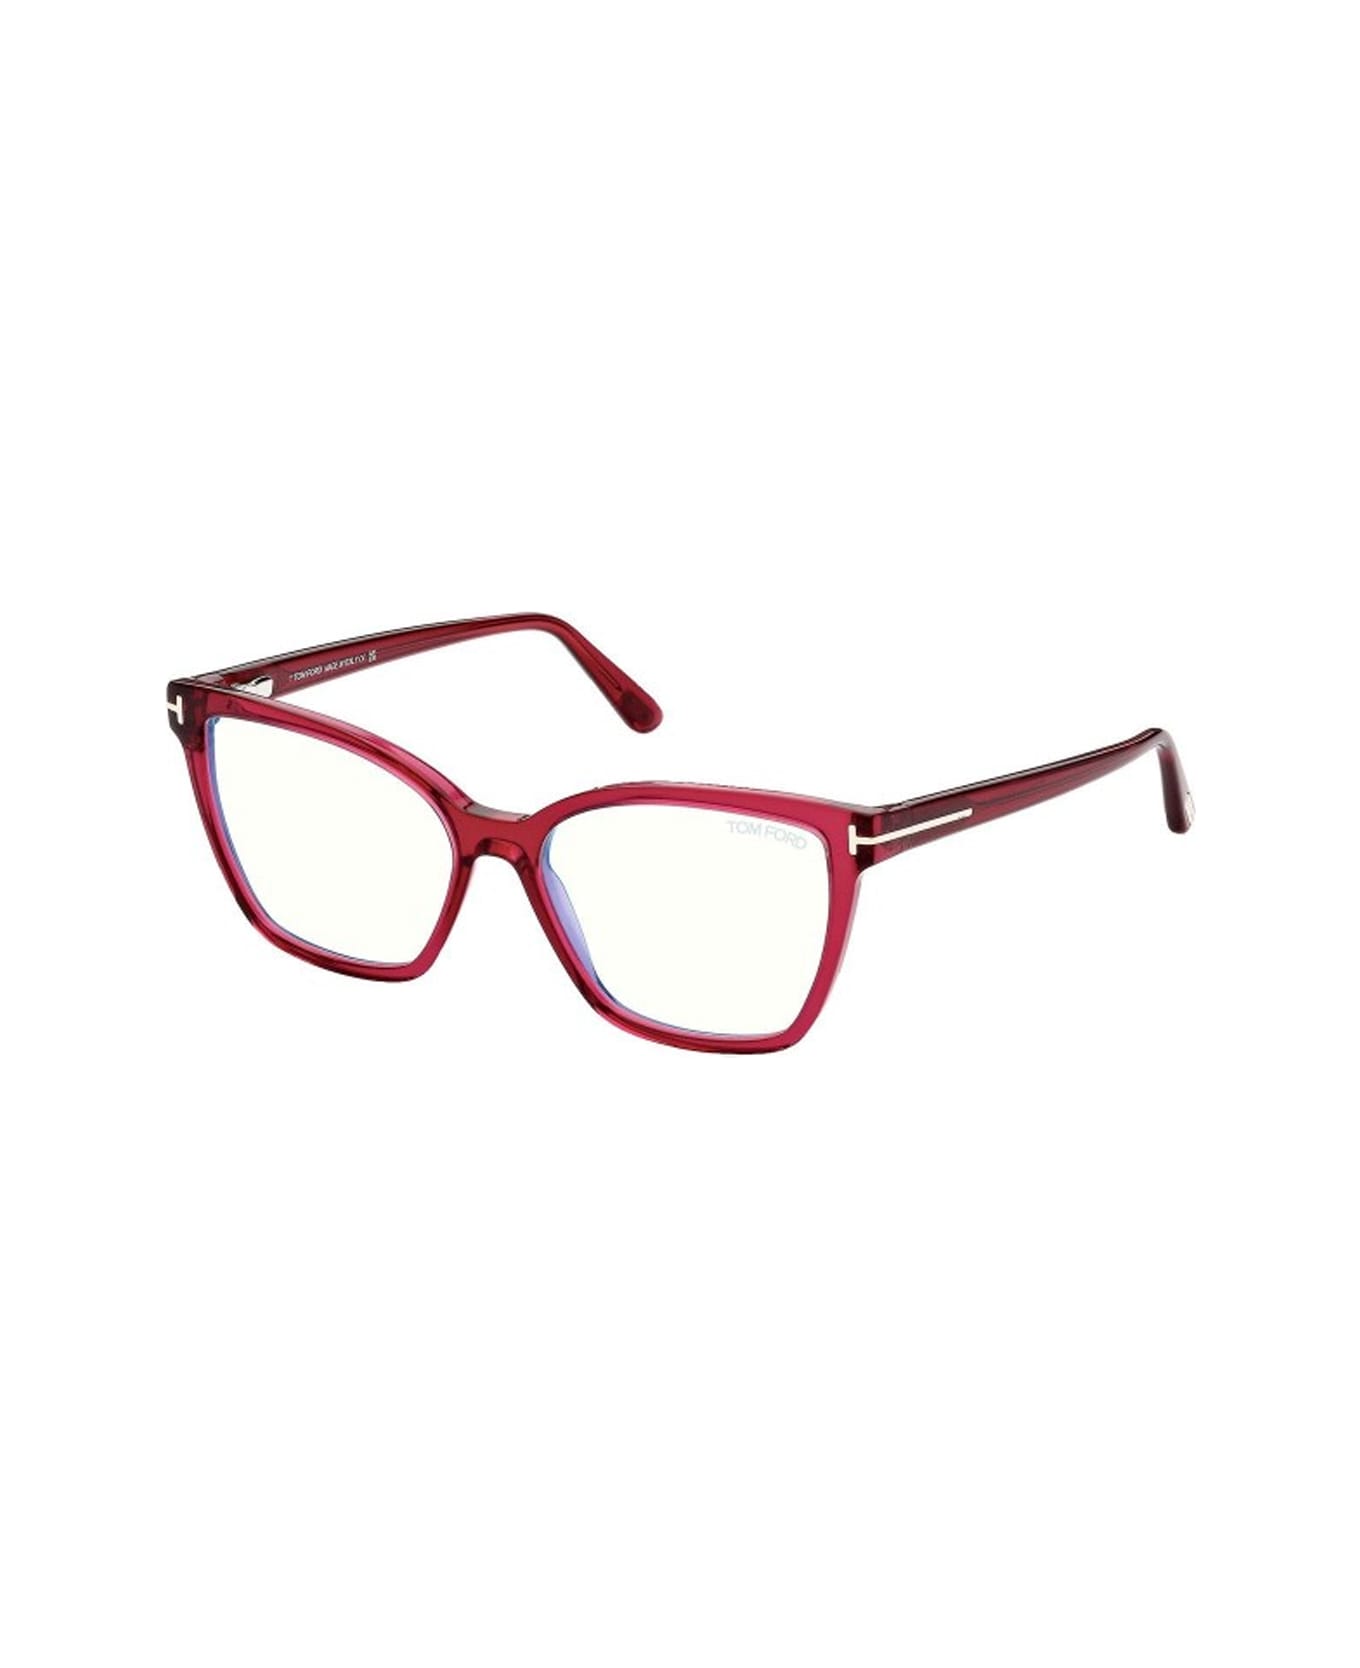 Tom Ford Eyewear Ft5812 074 Glasses - Rosa